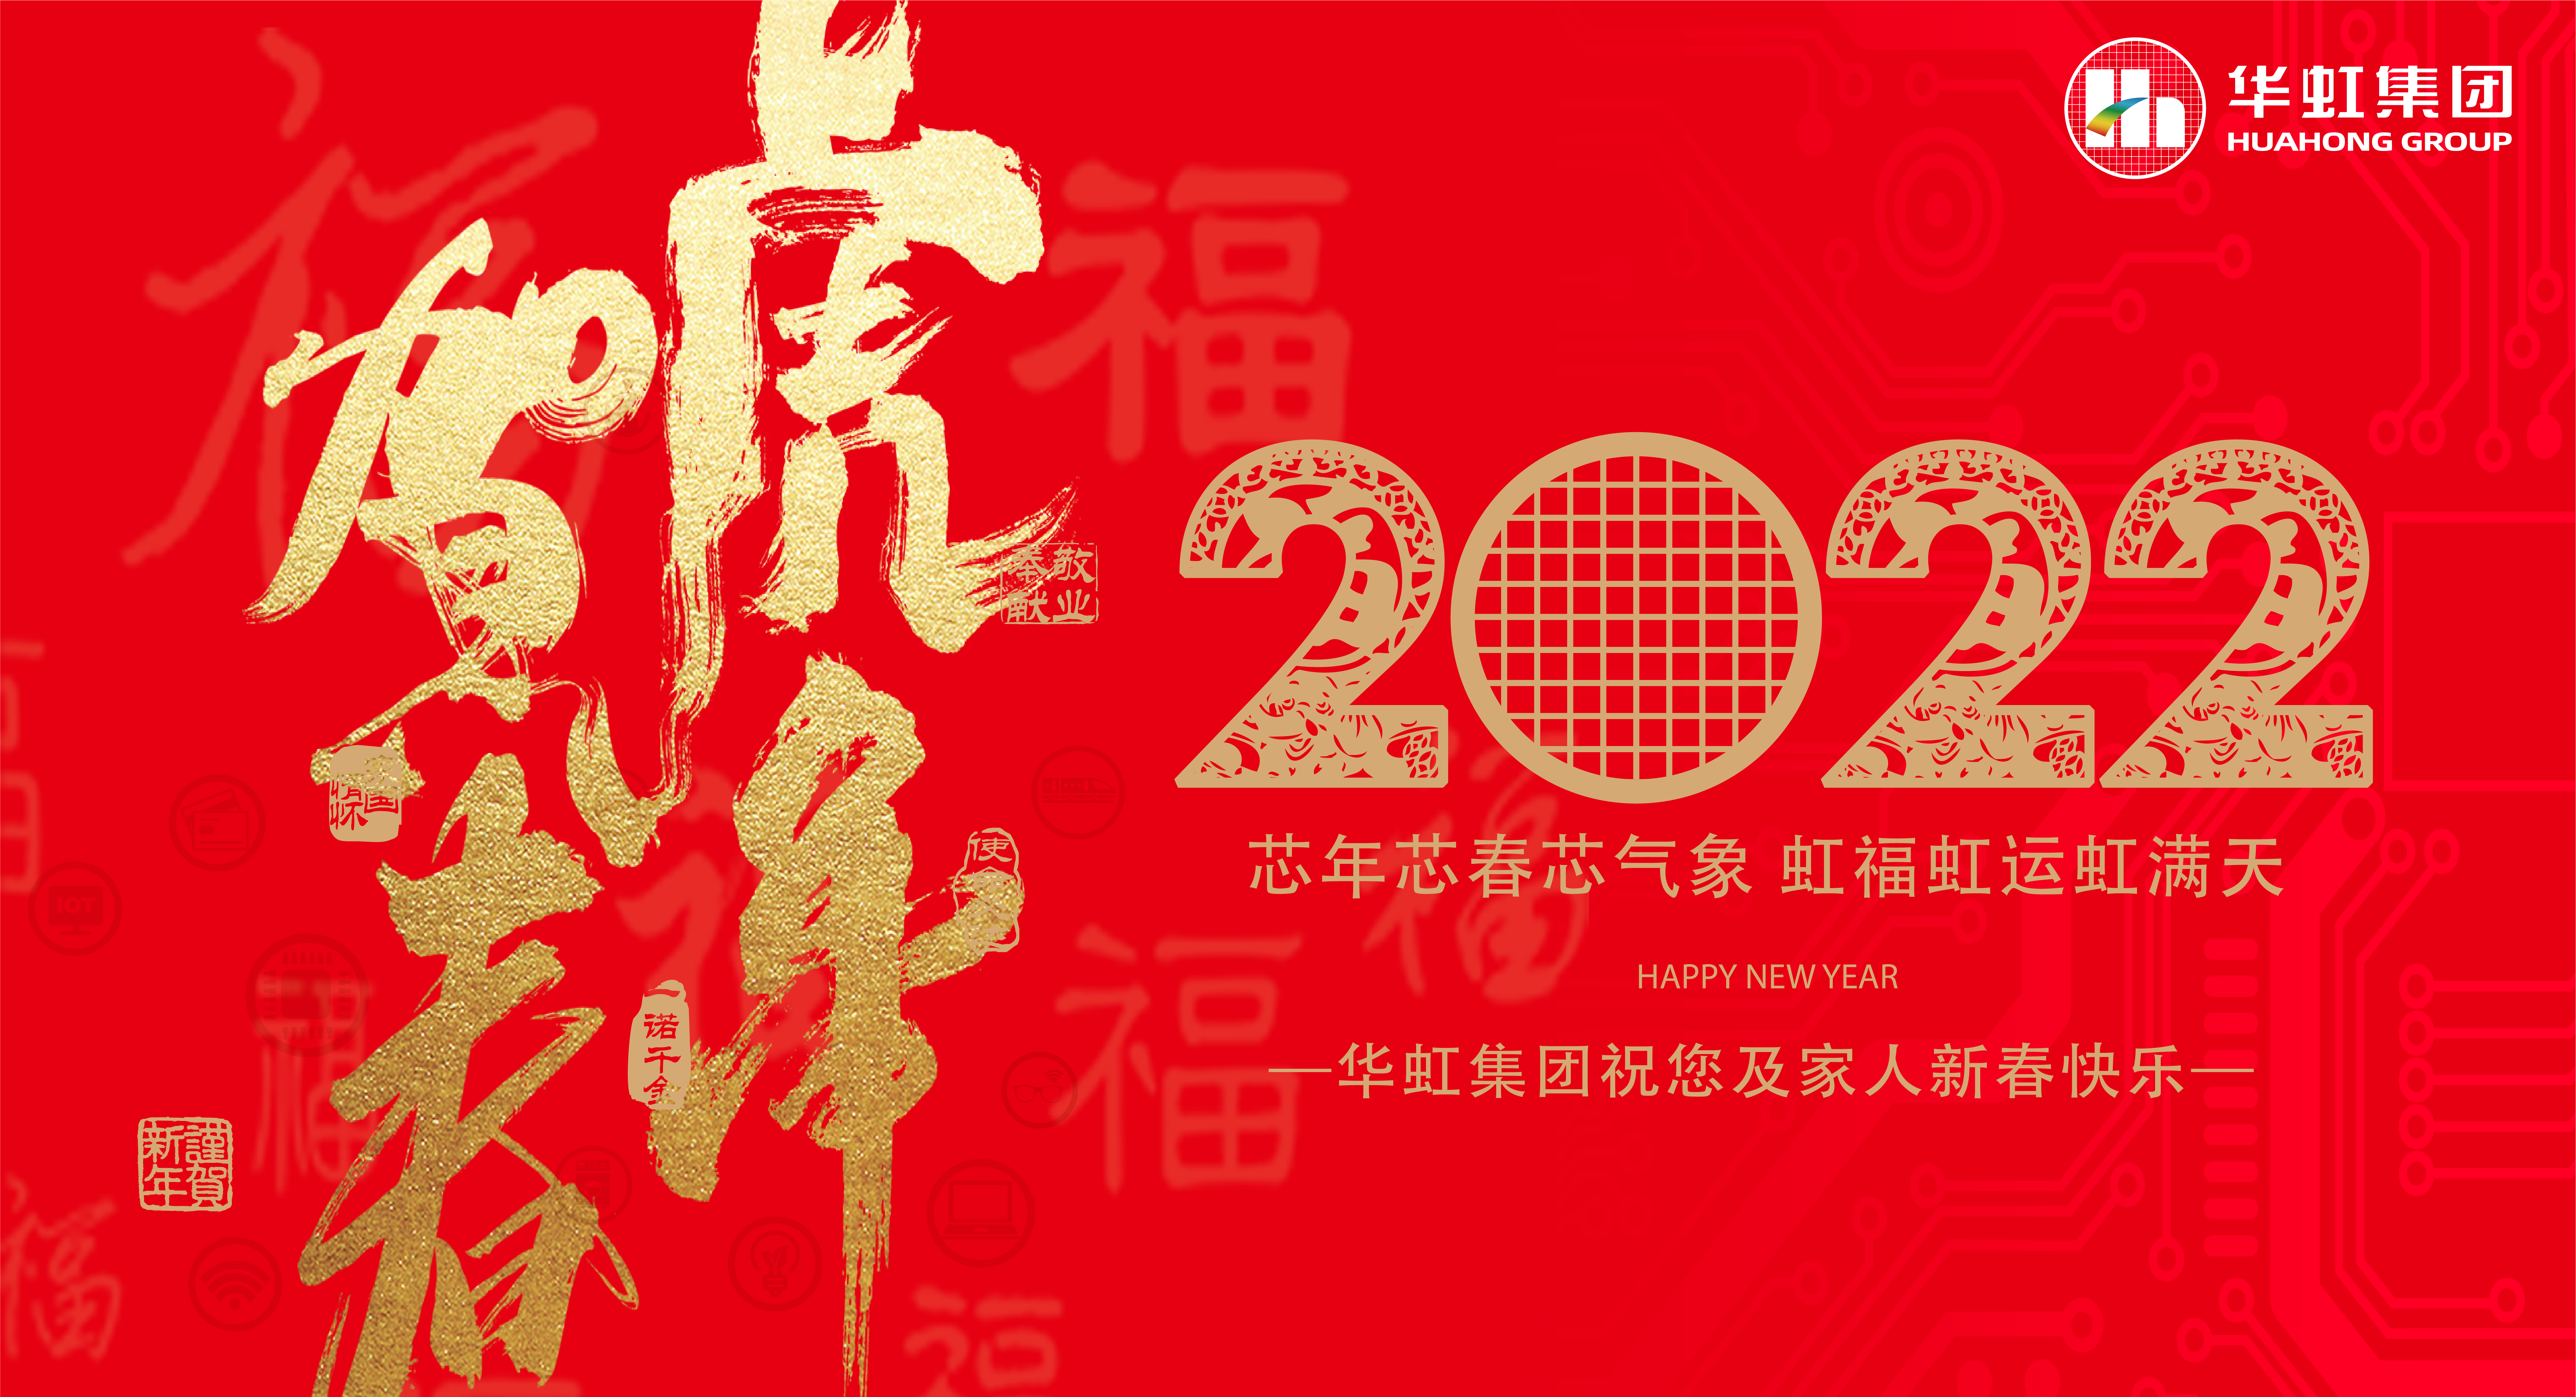 买球体育·(中国)官方网站祝您及家人新春快乐